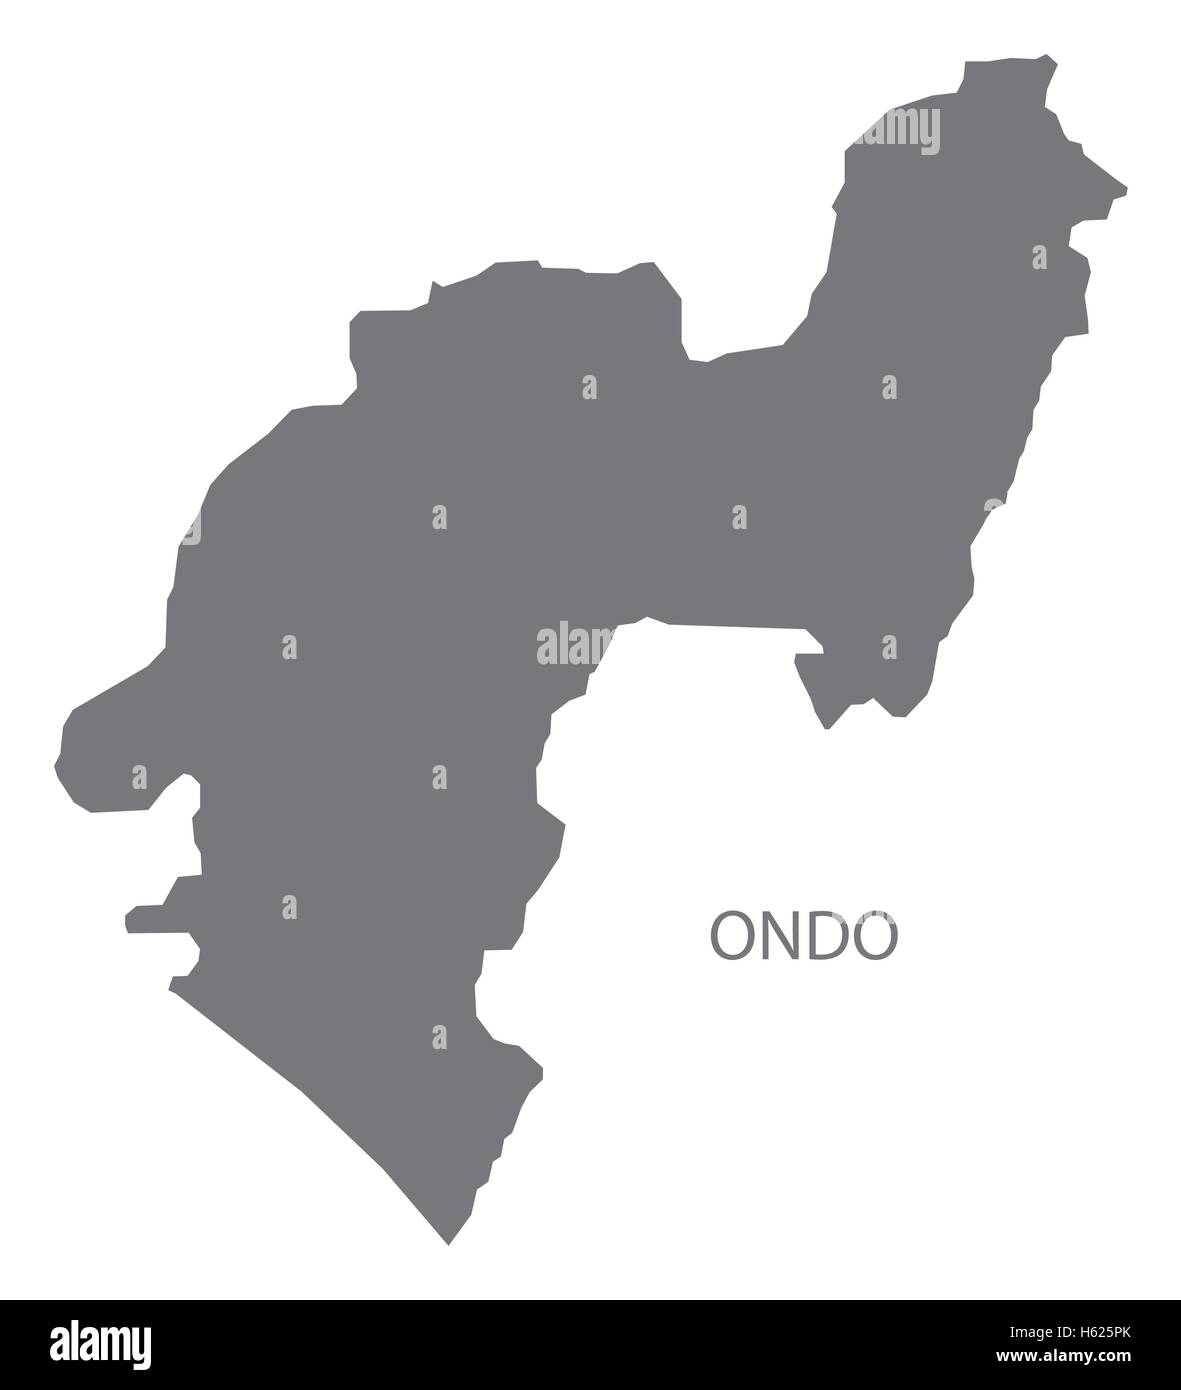 Ondo Nigeria Map grey Stock Vector